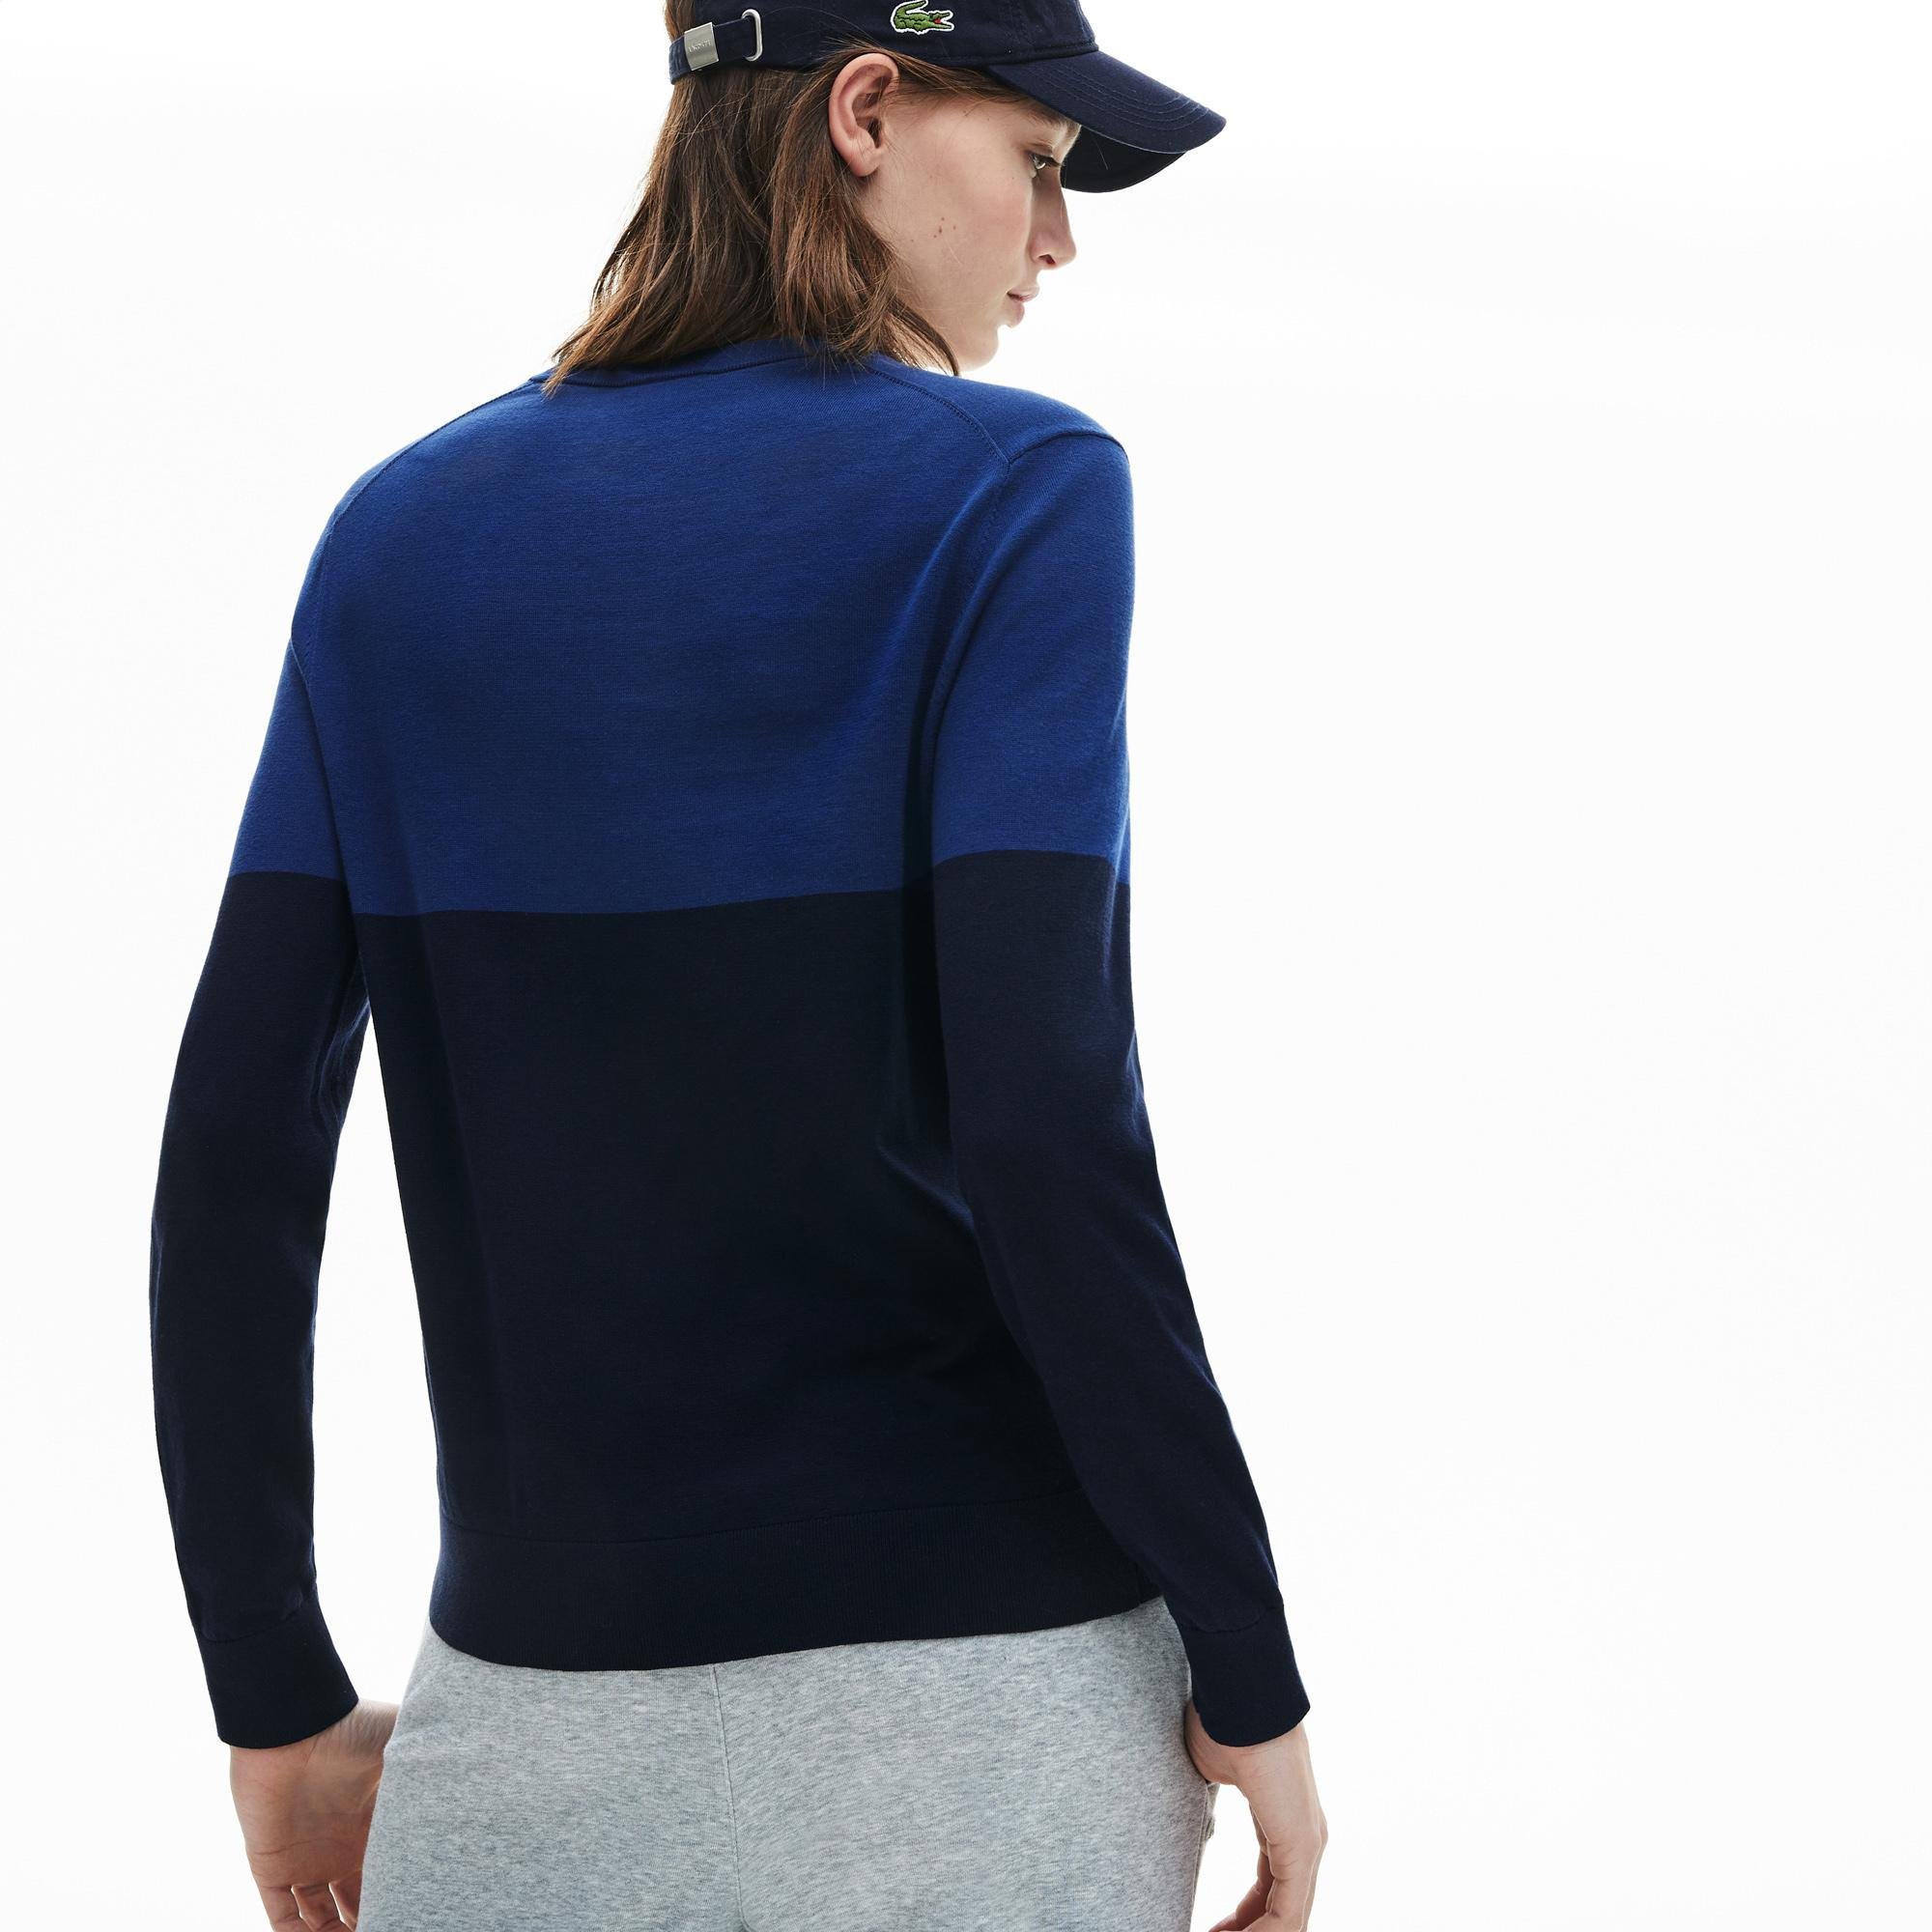 Lacoste Damski Sweter Bawełniany W Bloki Kolorystyczne Z Dekoltem W Kształcie Litery V